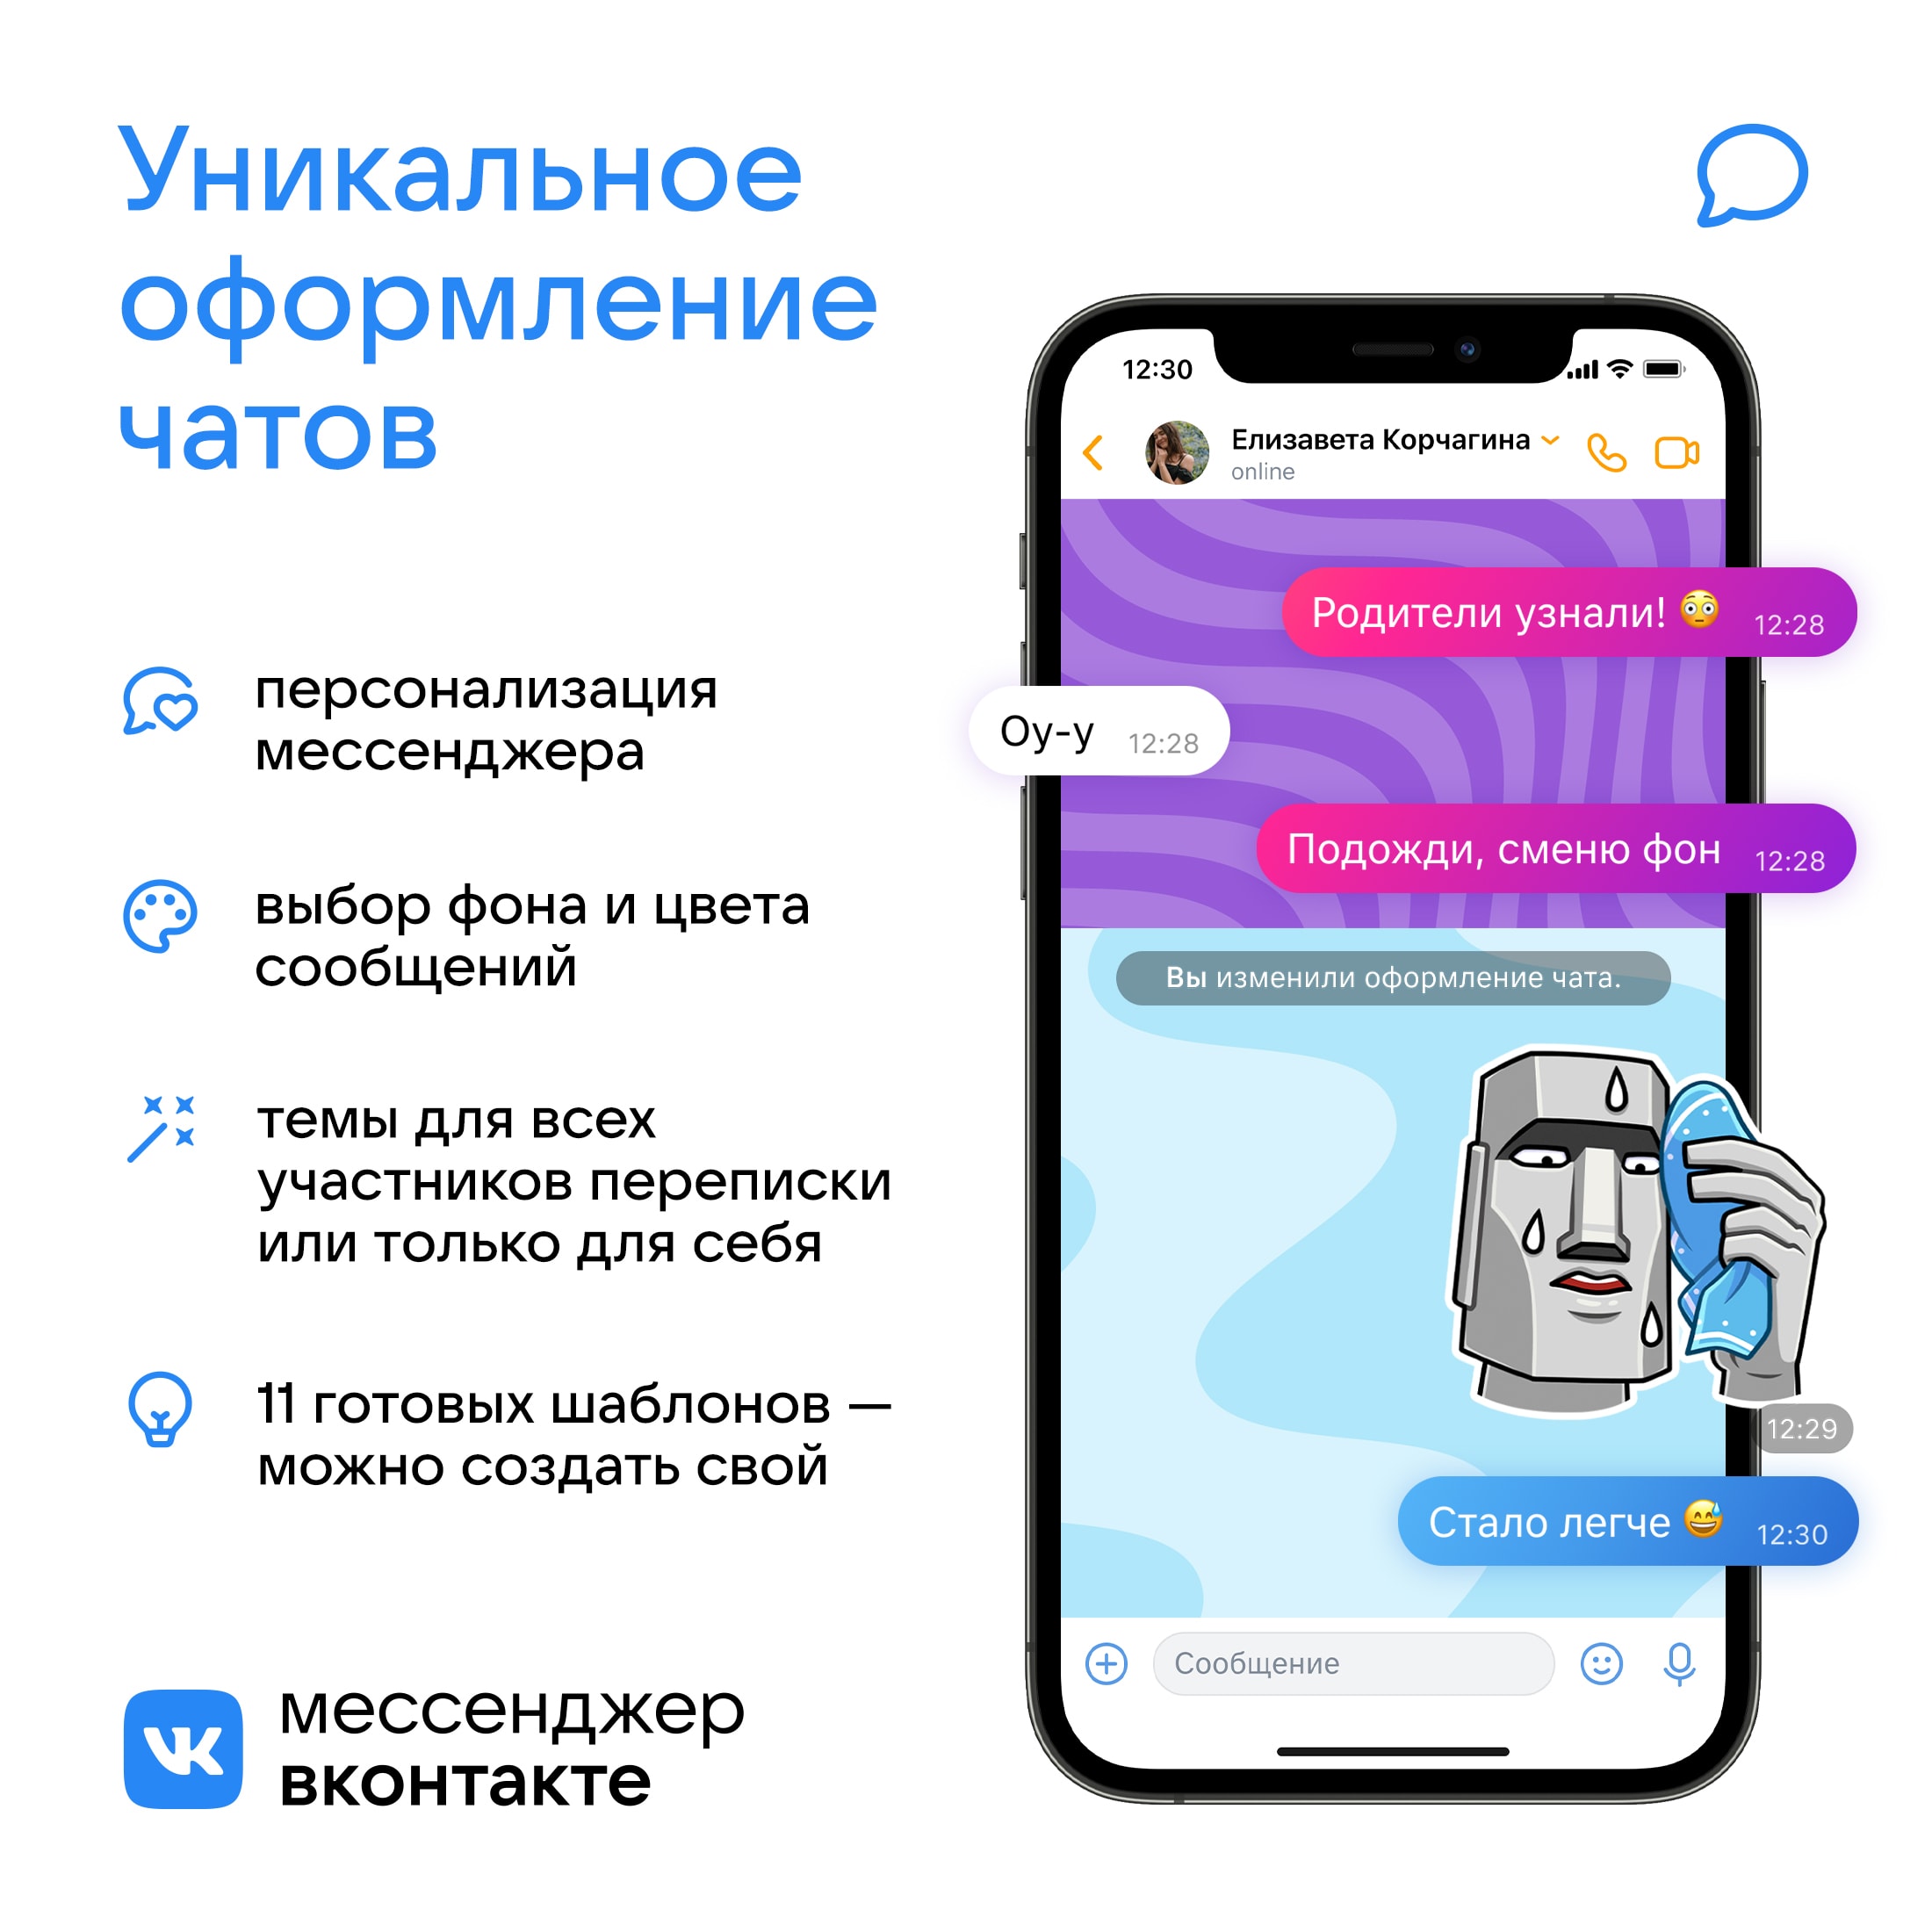 ВКонтакте представила новые возможности персонализации мессенджера